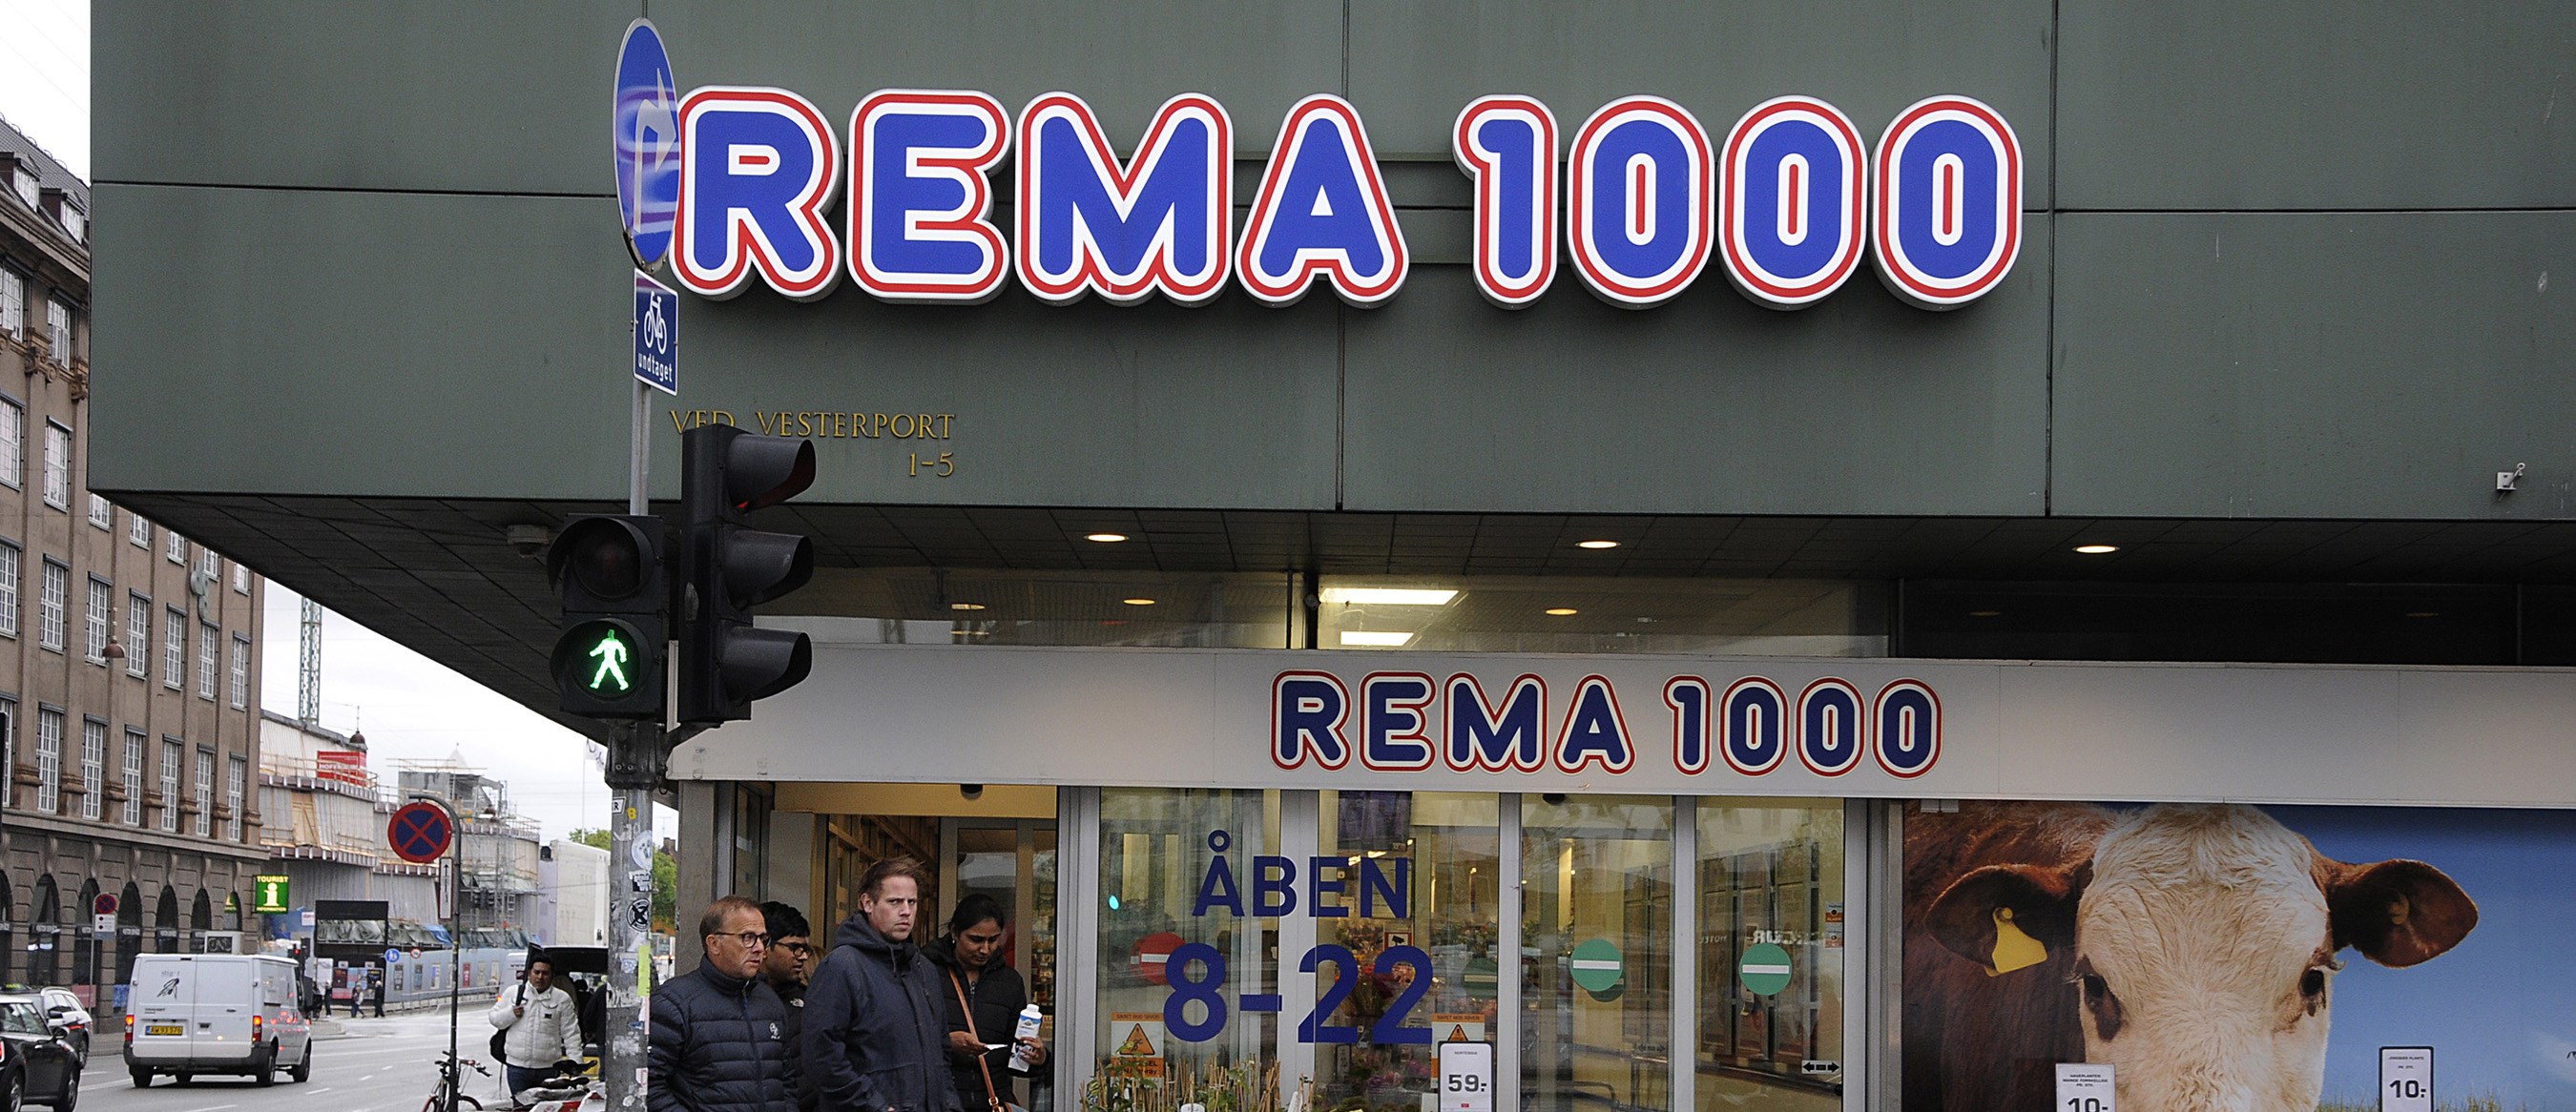 Rema 1000 Denmark